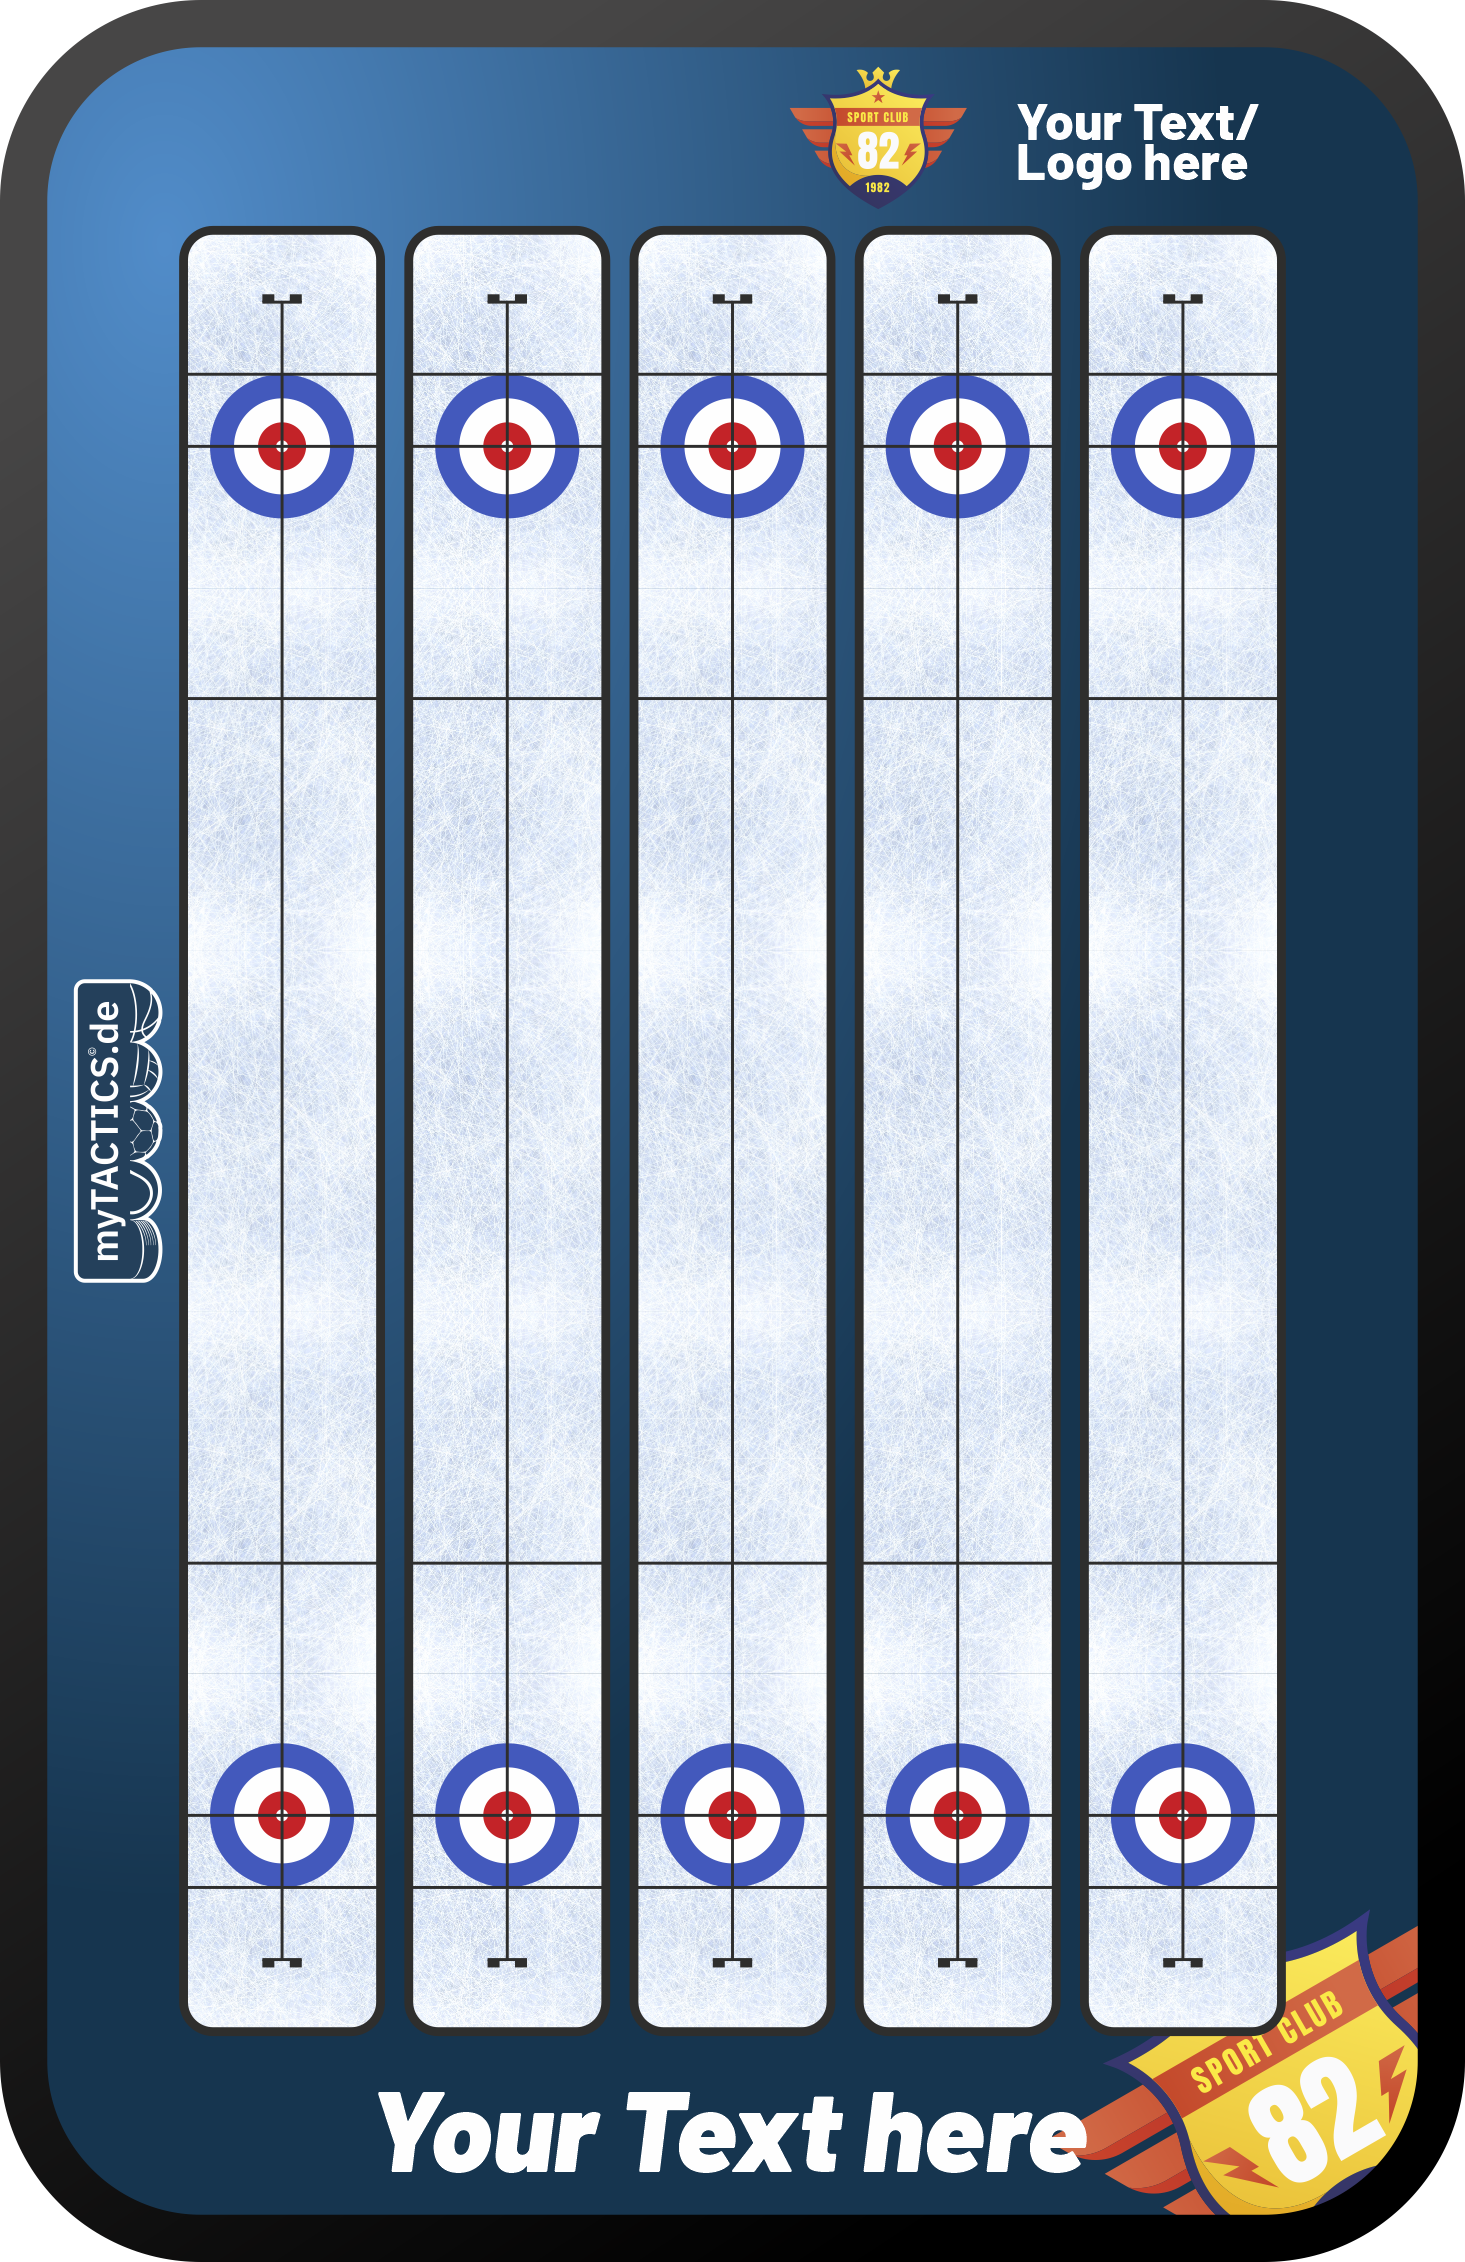 Curling tactics board